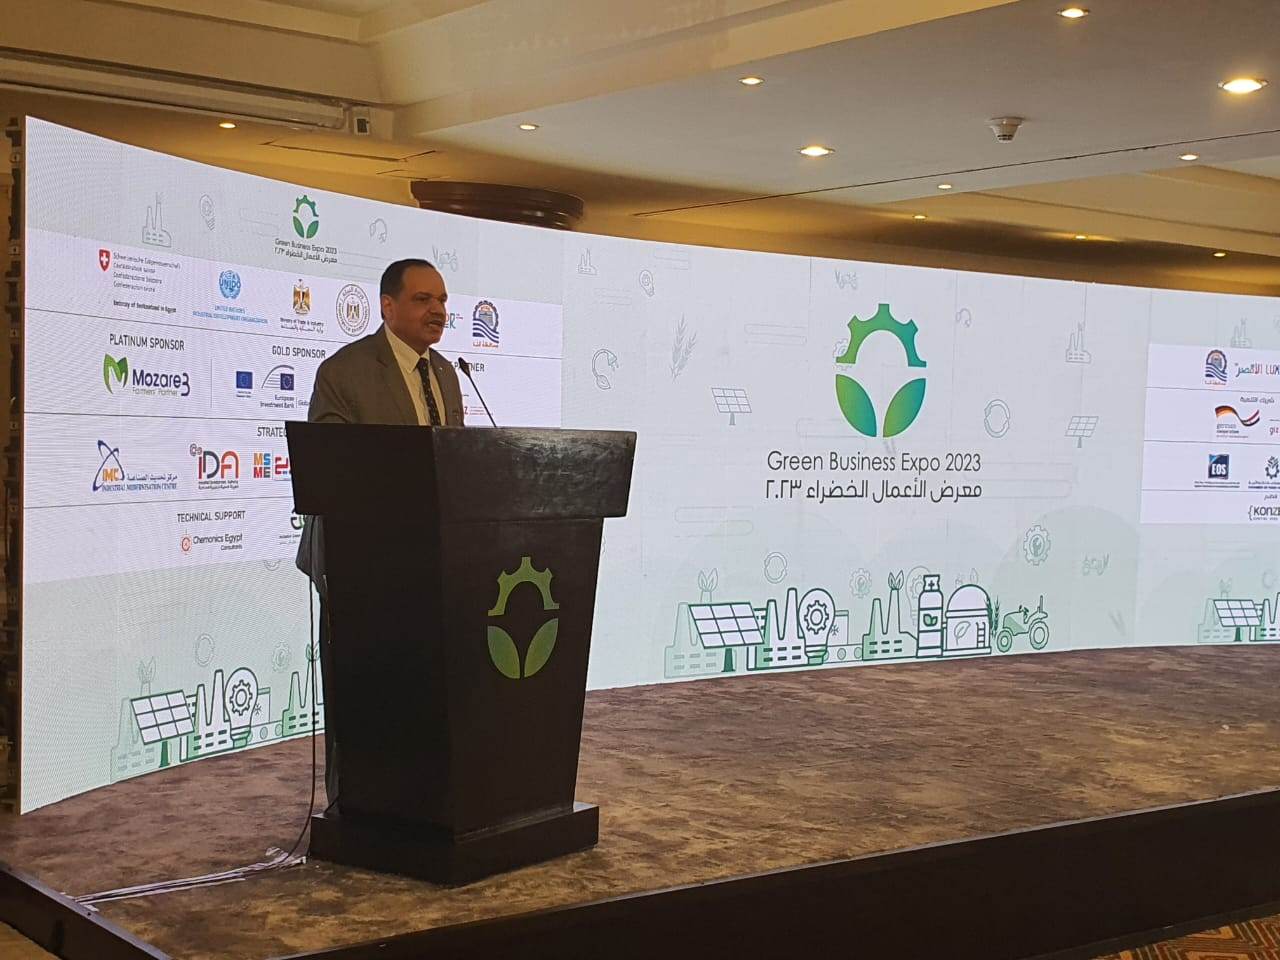 تنمية المشروعات يشارك في مؤتمر الأعمال الخضراء بالأقصر (2)